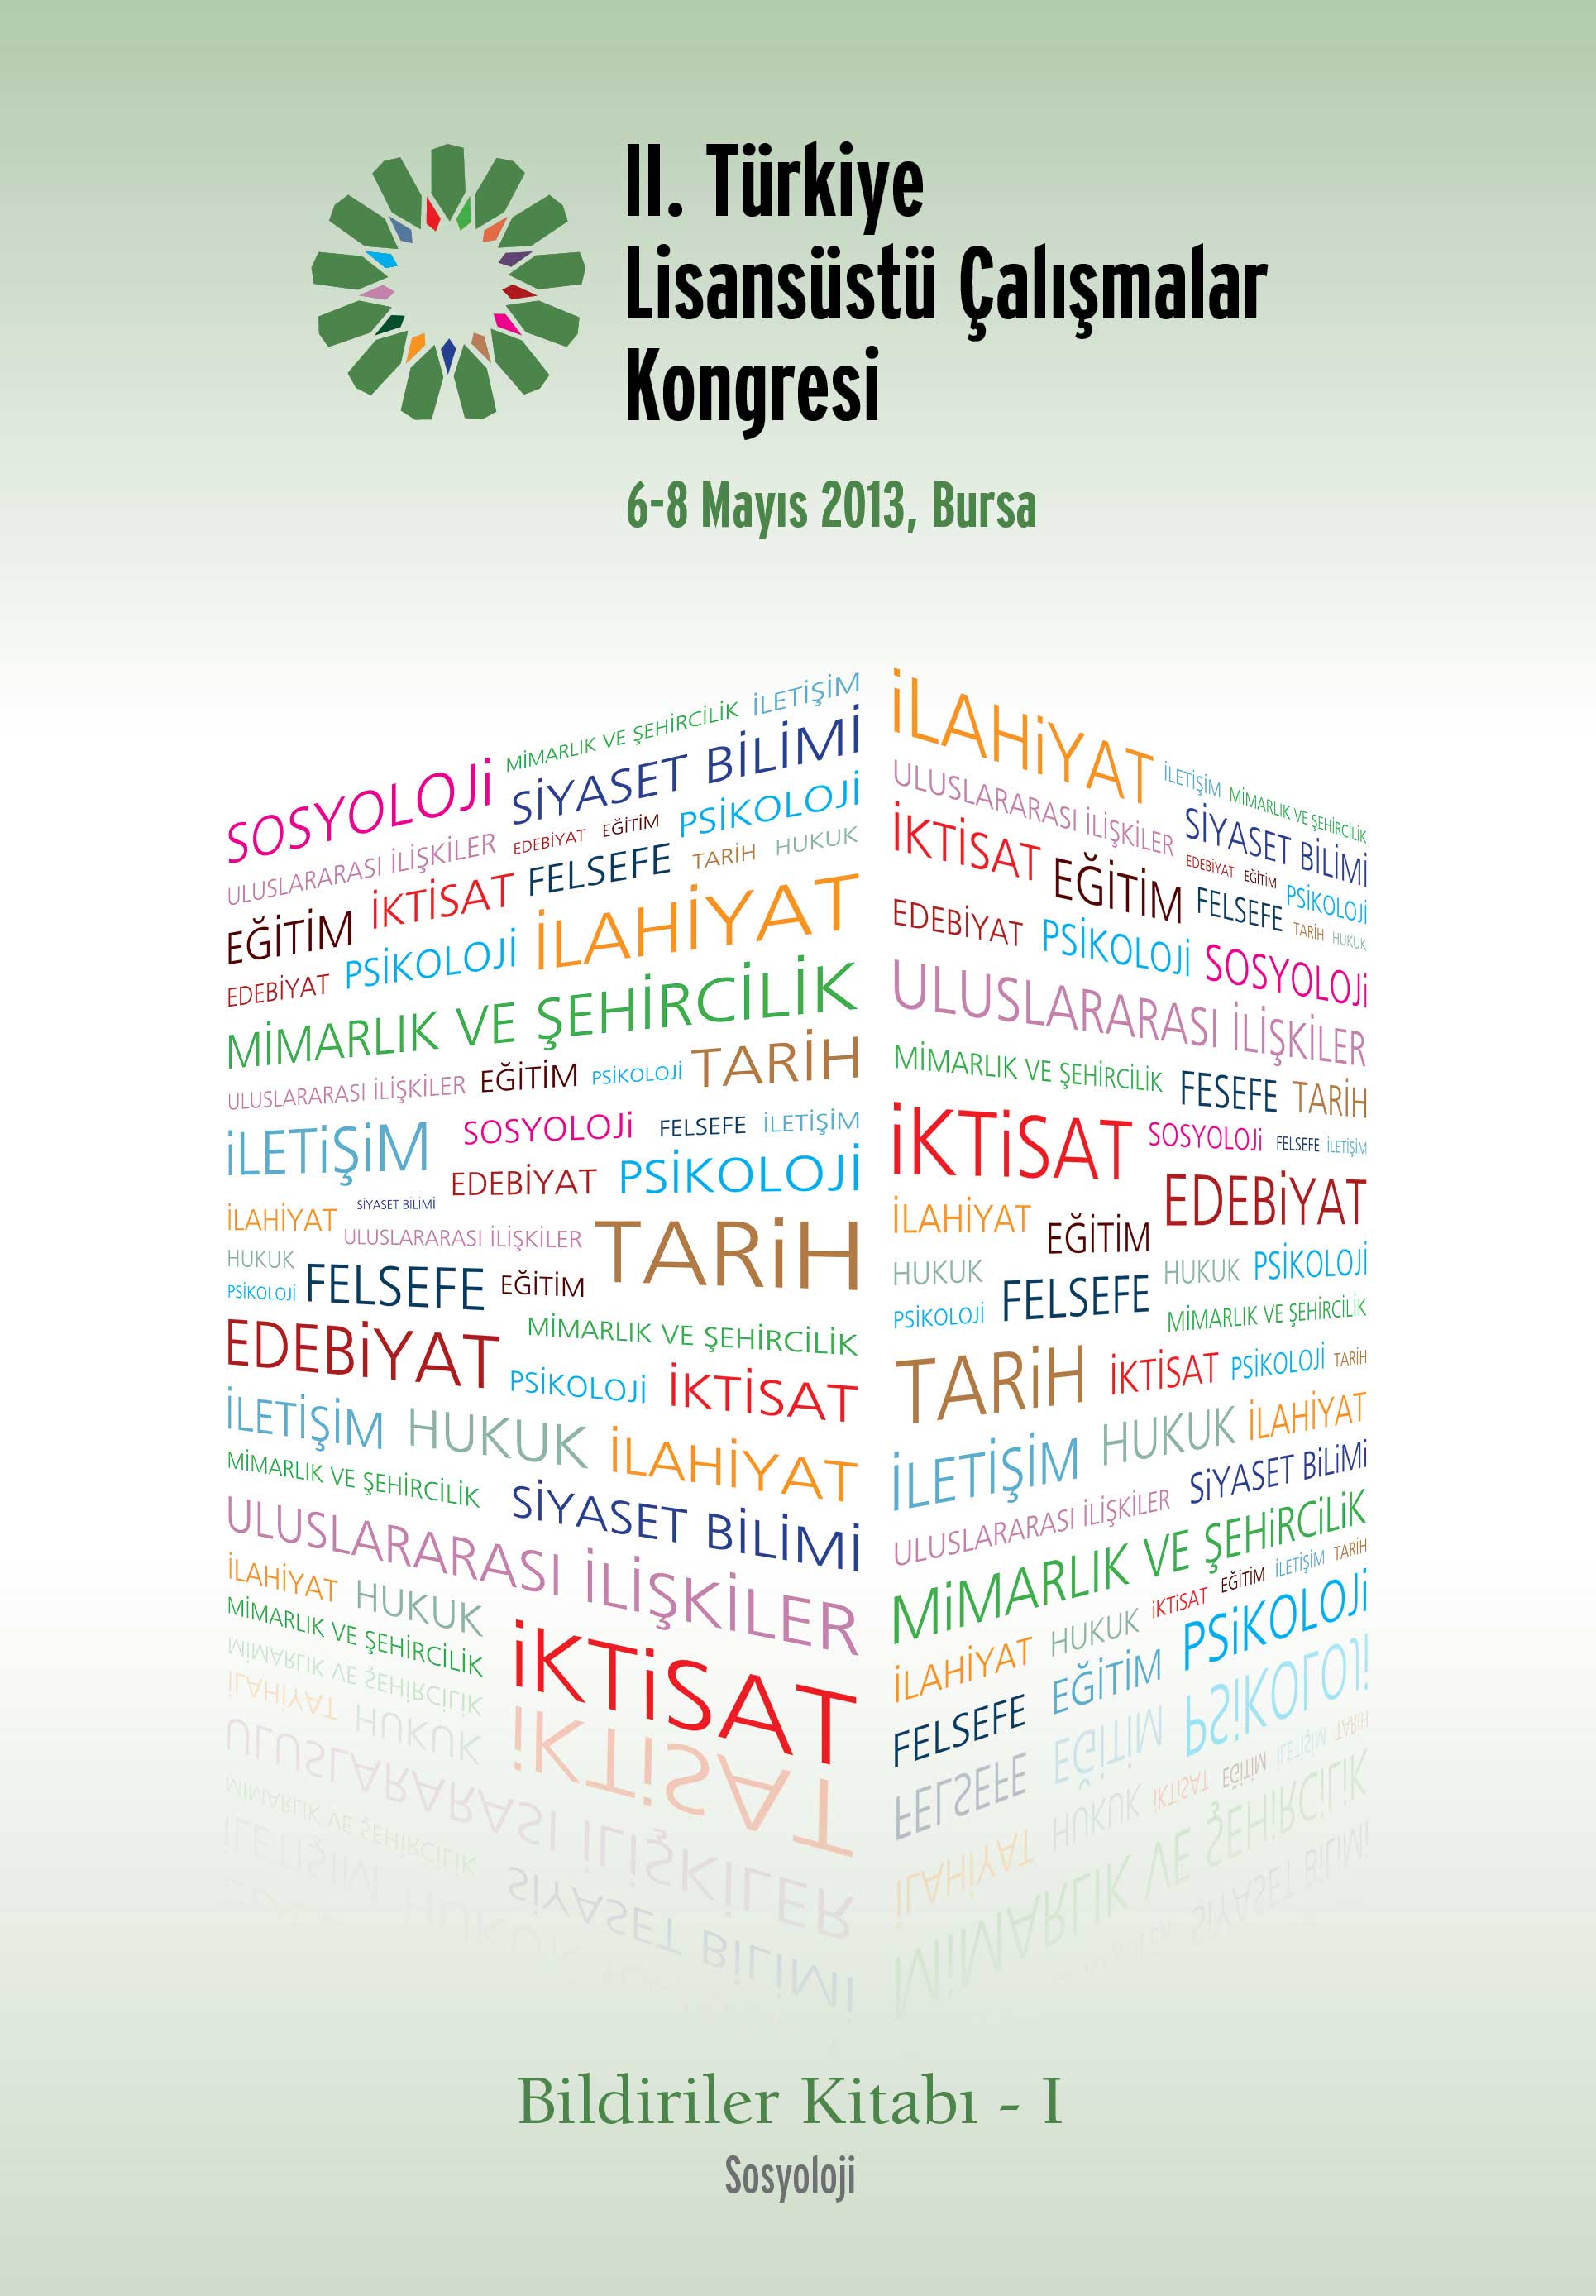 2. Türkiye Lisansüstü Çalışmalar Kongresi Bildiriler Kitabı